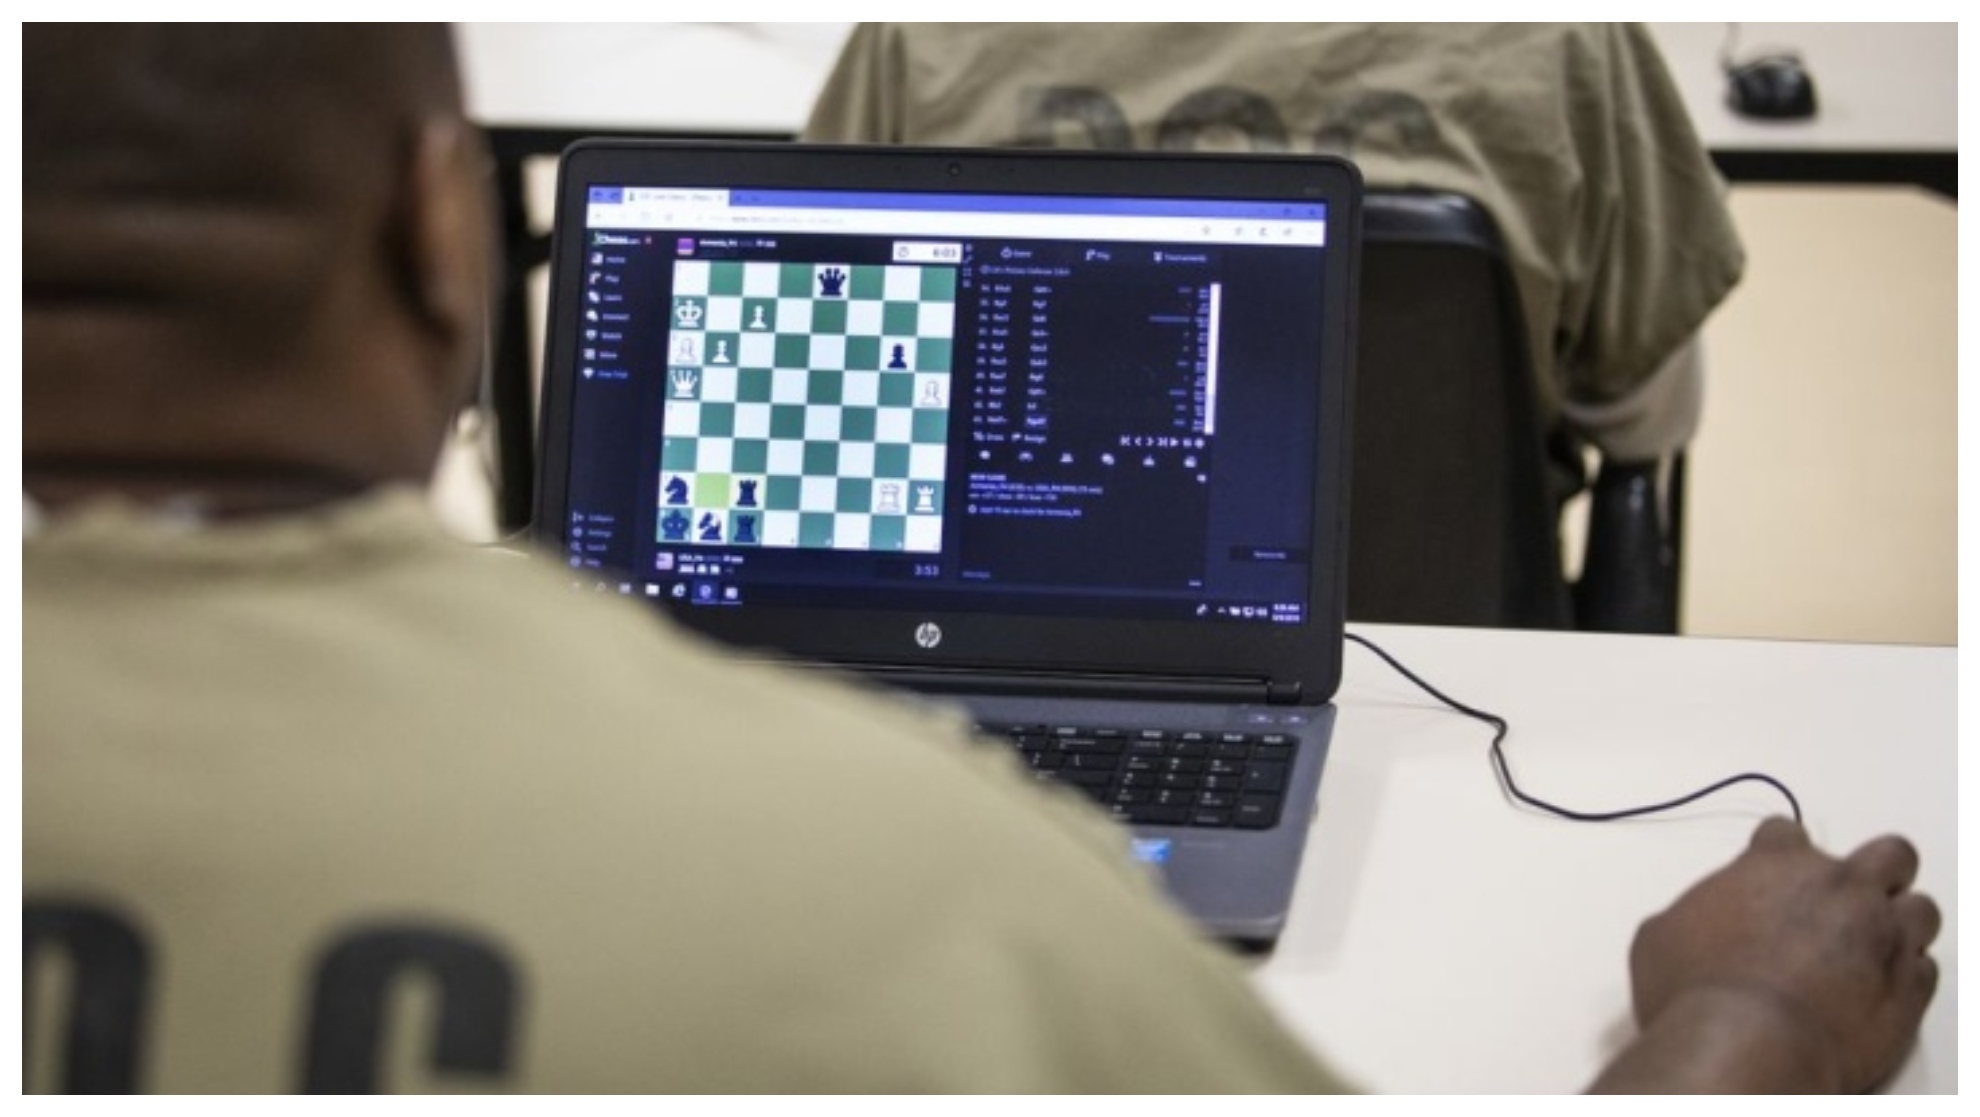 Reclusos juegan en un ordenador al ajedrez.